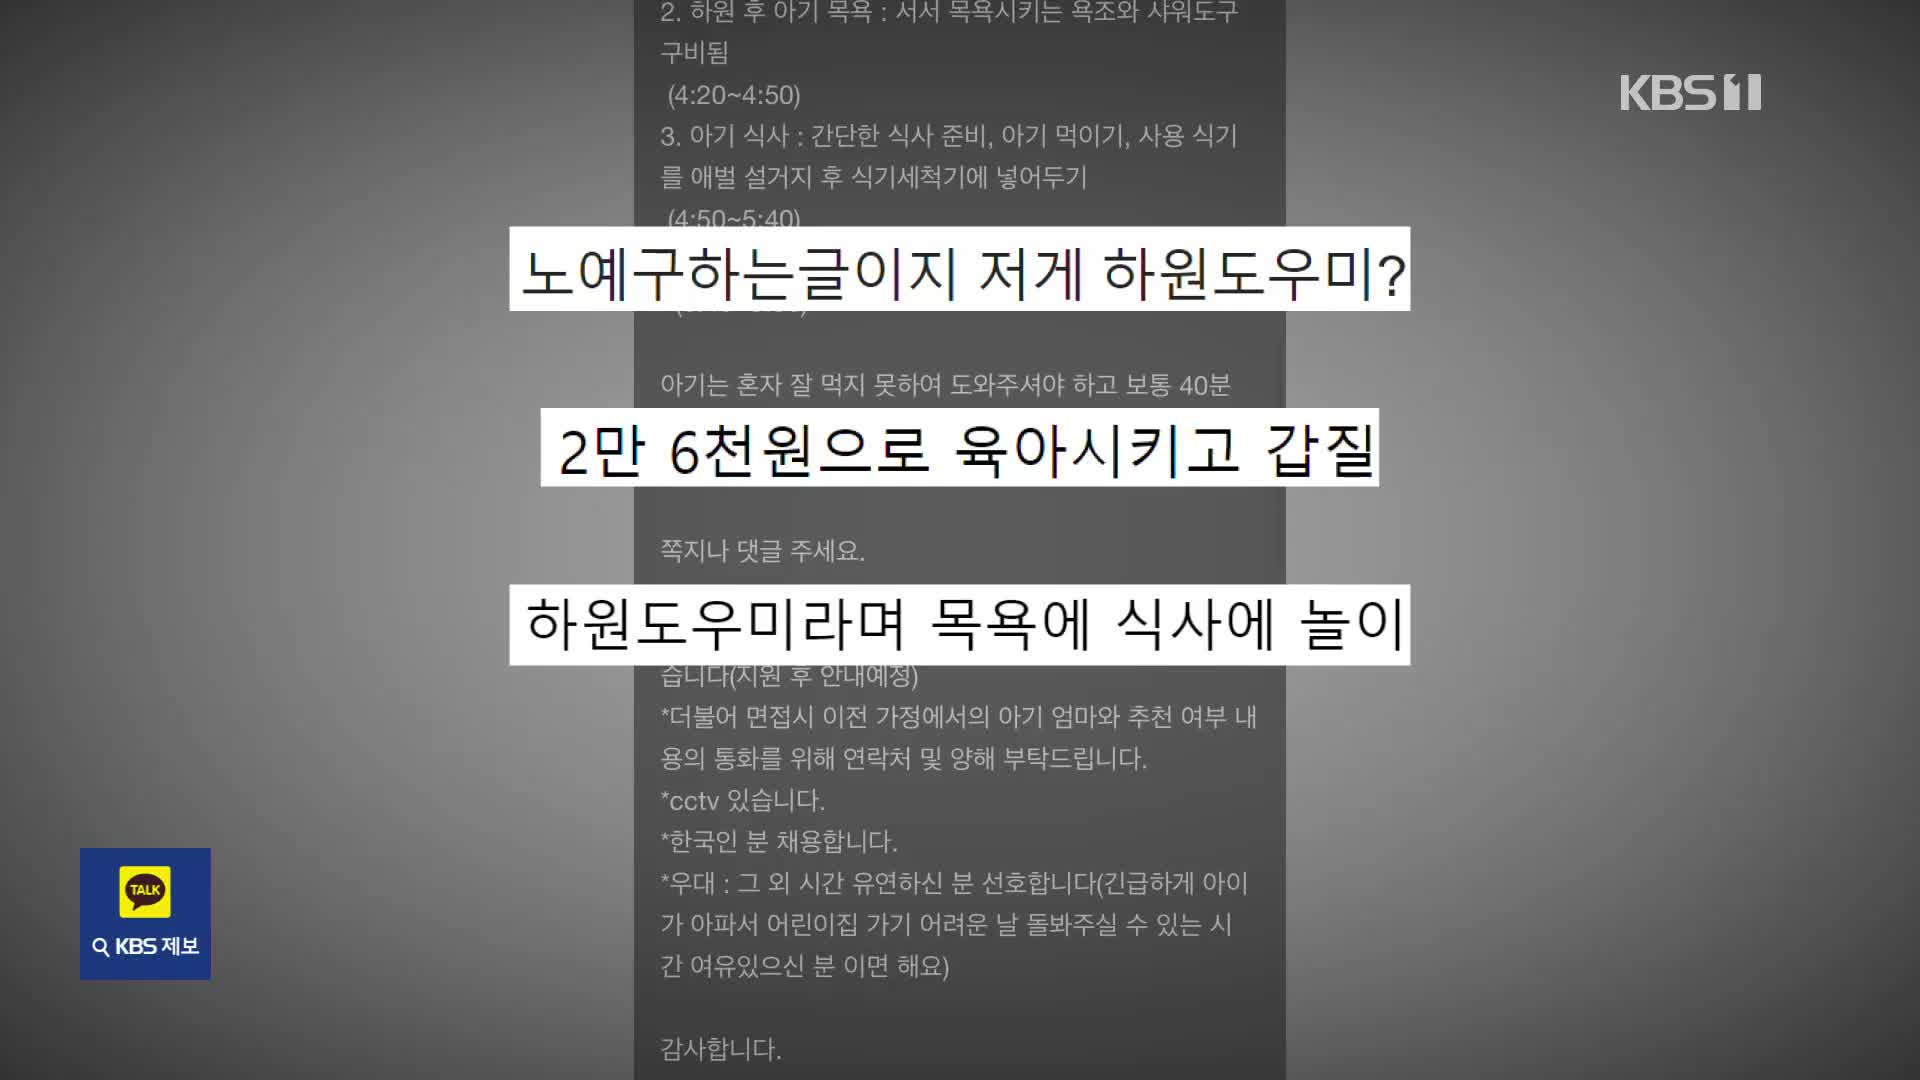 “노예 구하나”…2살 남아 하원 도우미 모집글 ‘시끌’ [잇슈 키워드] 